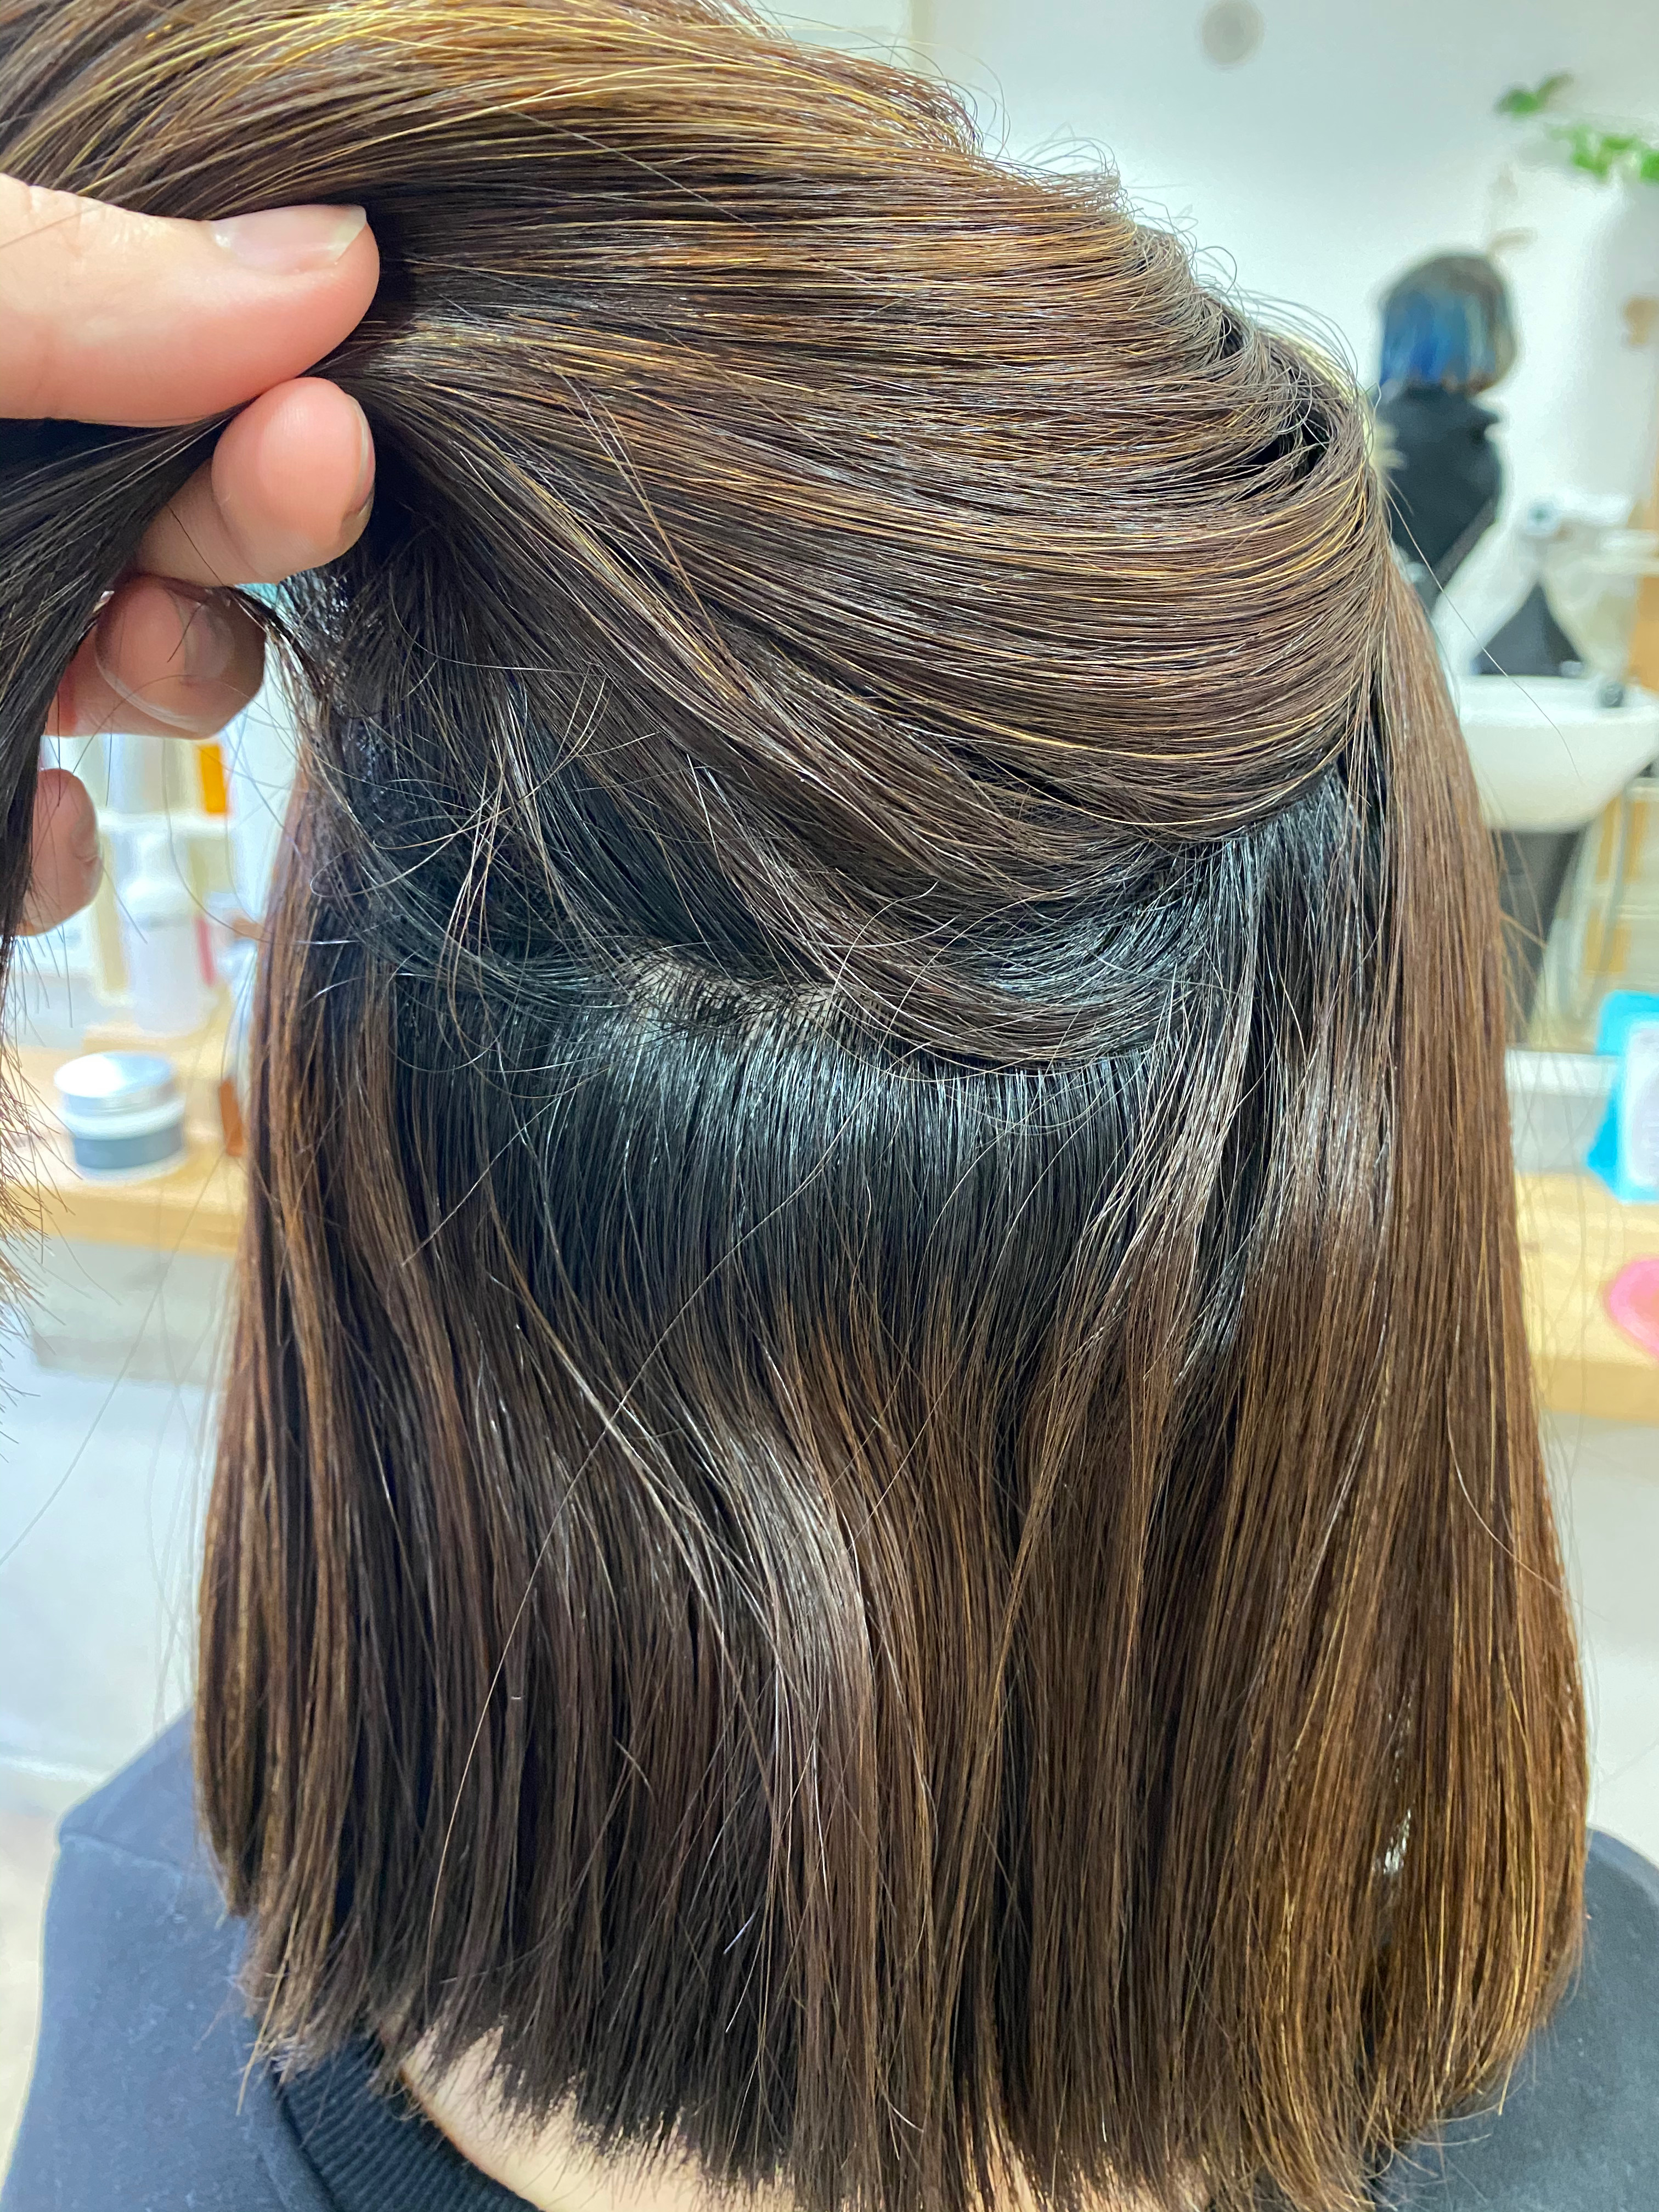 ハイライトの入った髪の縮毛矯正。原宿・表参道『髪のお悩みを解決するヘアケア美容師の挑戦』